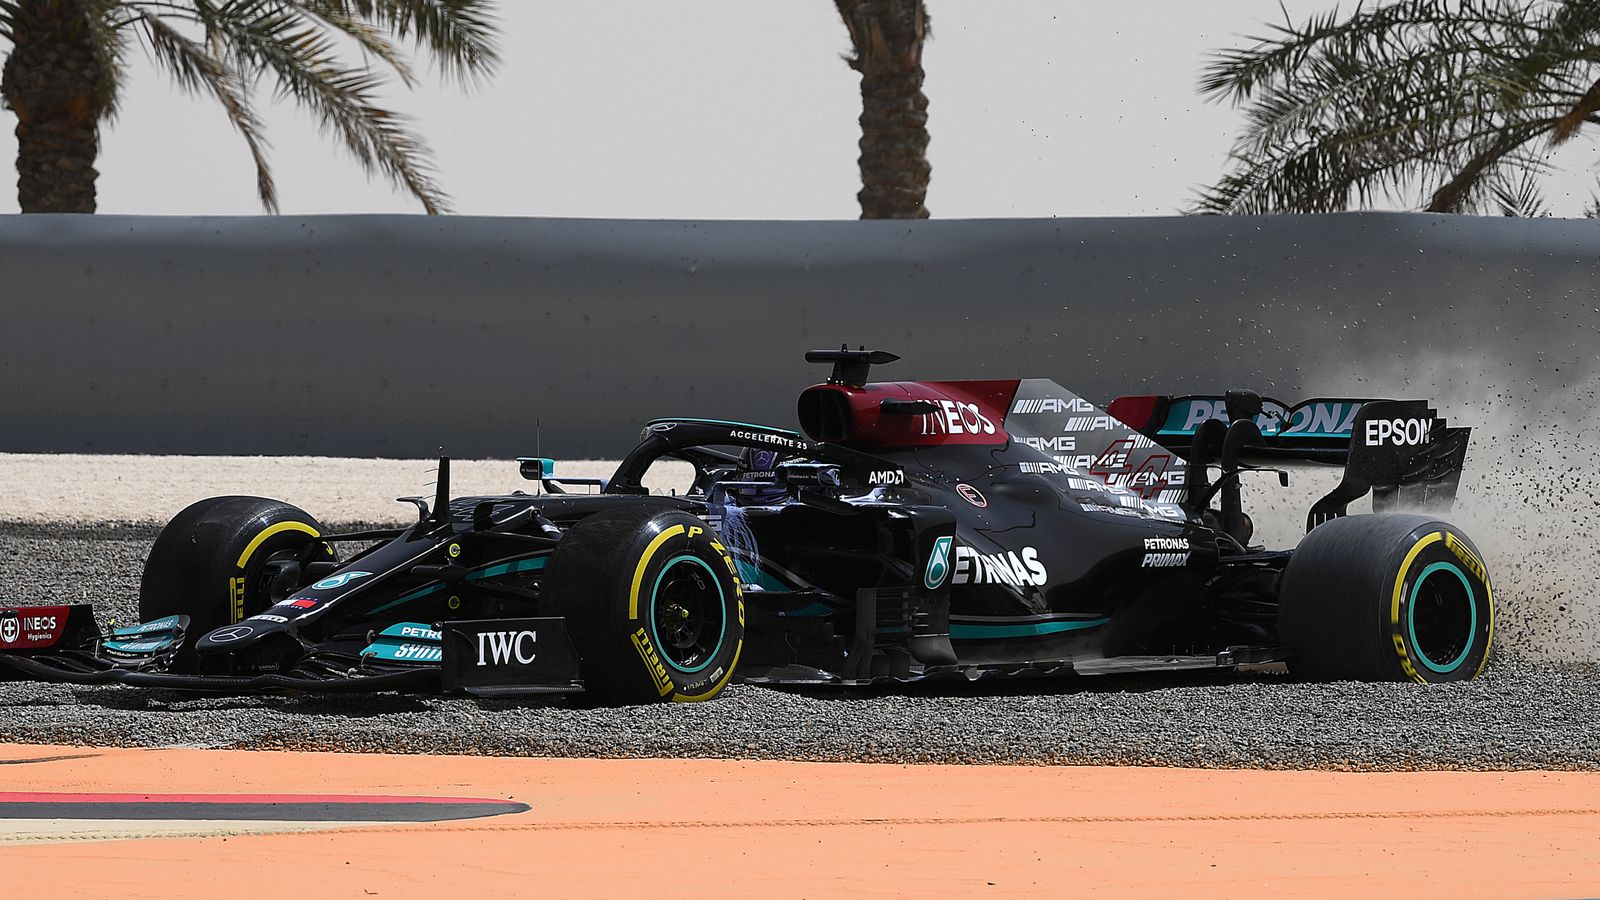 Formel 1 News Voting zu Mercedes und Lewis Hamilton nach den Tests Formel 1 News Sky Sport